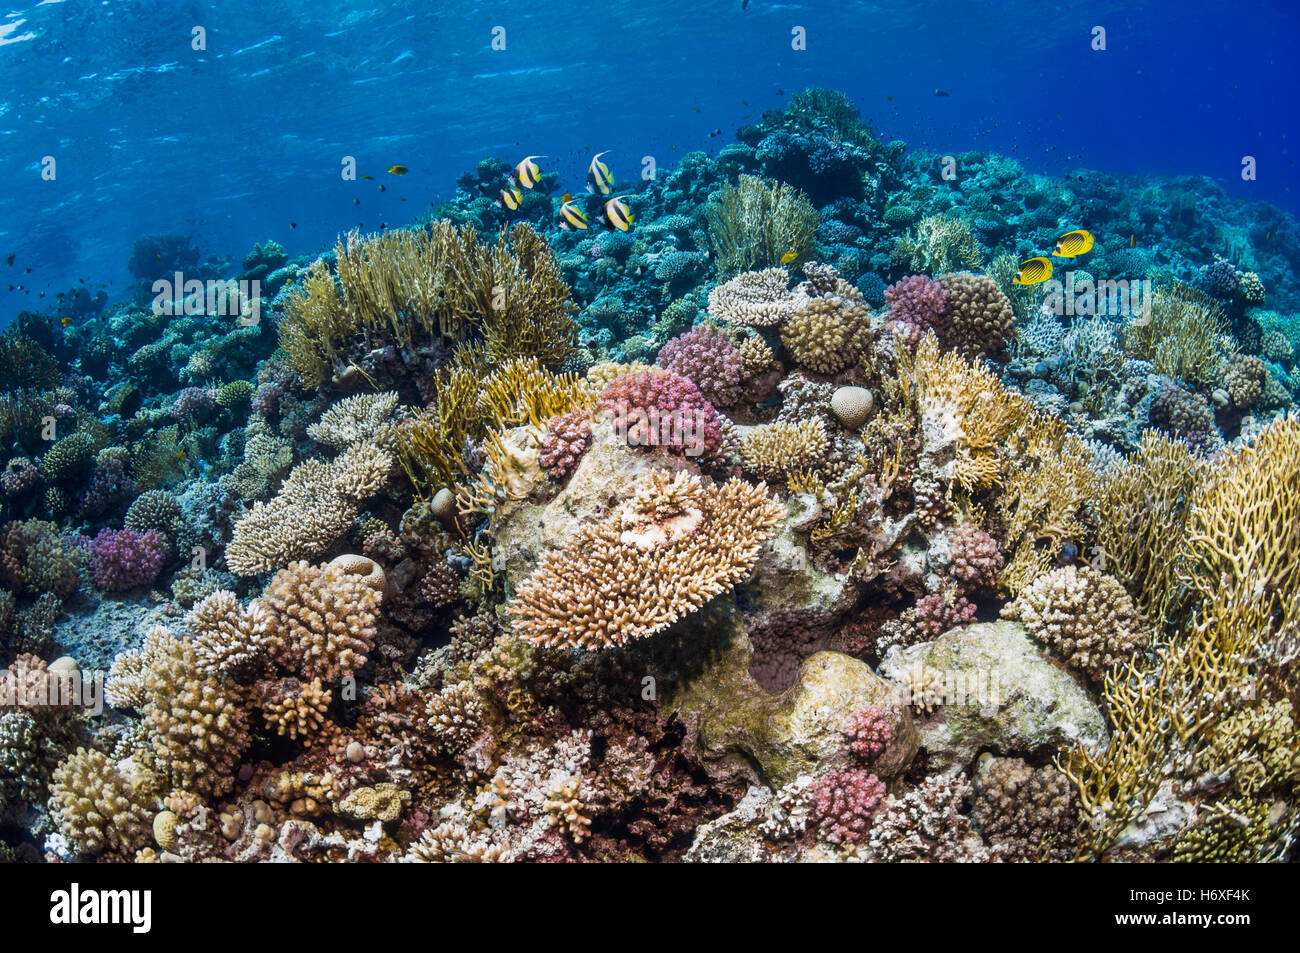 Parte superiore della barriera corallina con Red Sea bannerfish [Heniochus intermedius] e Mar Rosso butterflyfish [Chaetodon fasciatus]. Egitto, rosso se Foto Stock